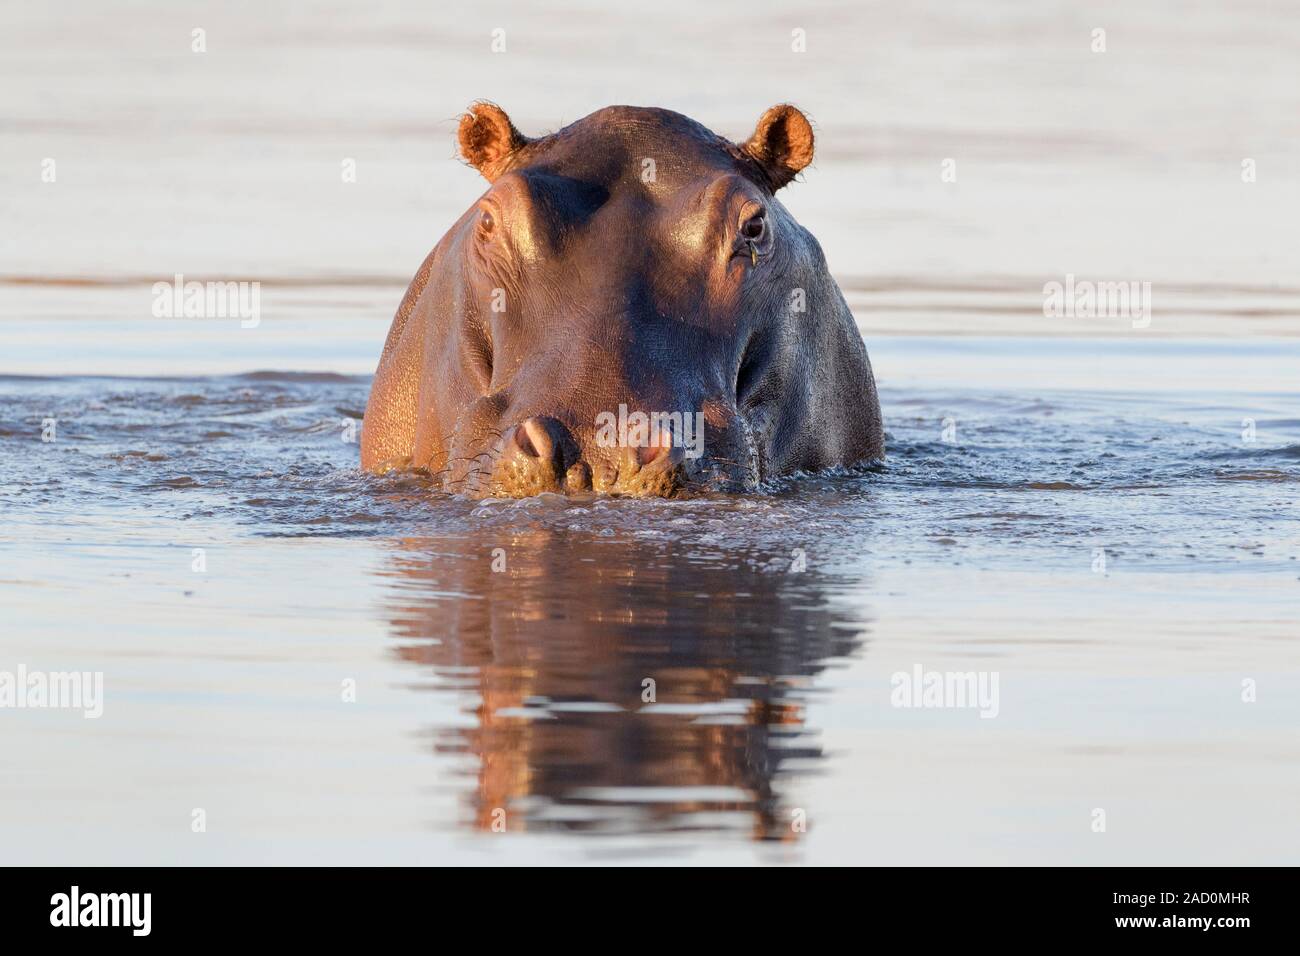 Hippopotame (Hippopotamus amphibius) dans l'eau looking at camera, Kruger National Park, Afrique du Sud. Banque D'Images